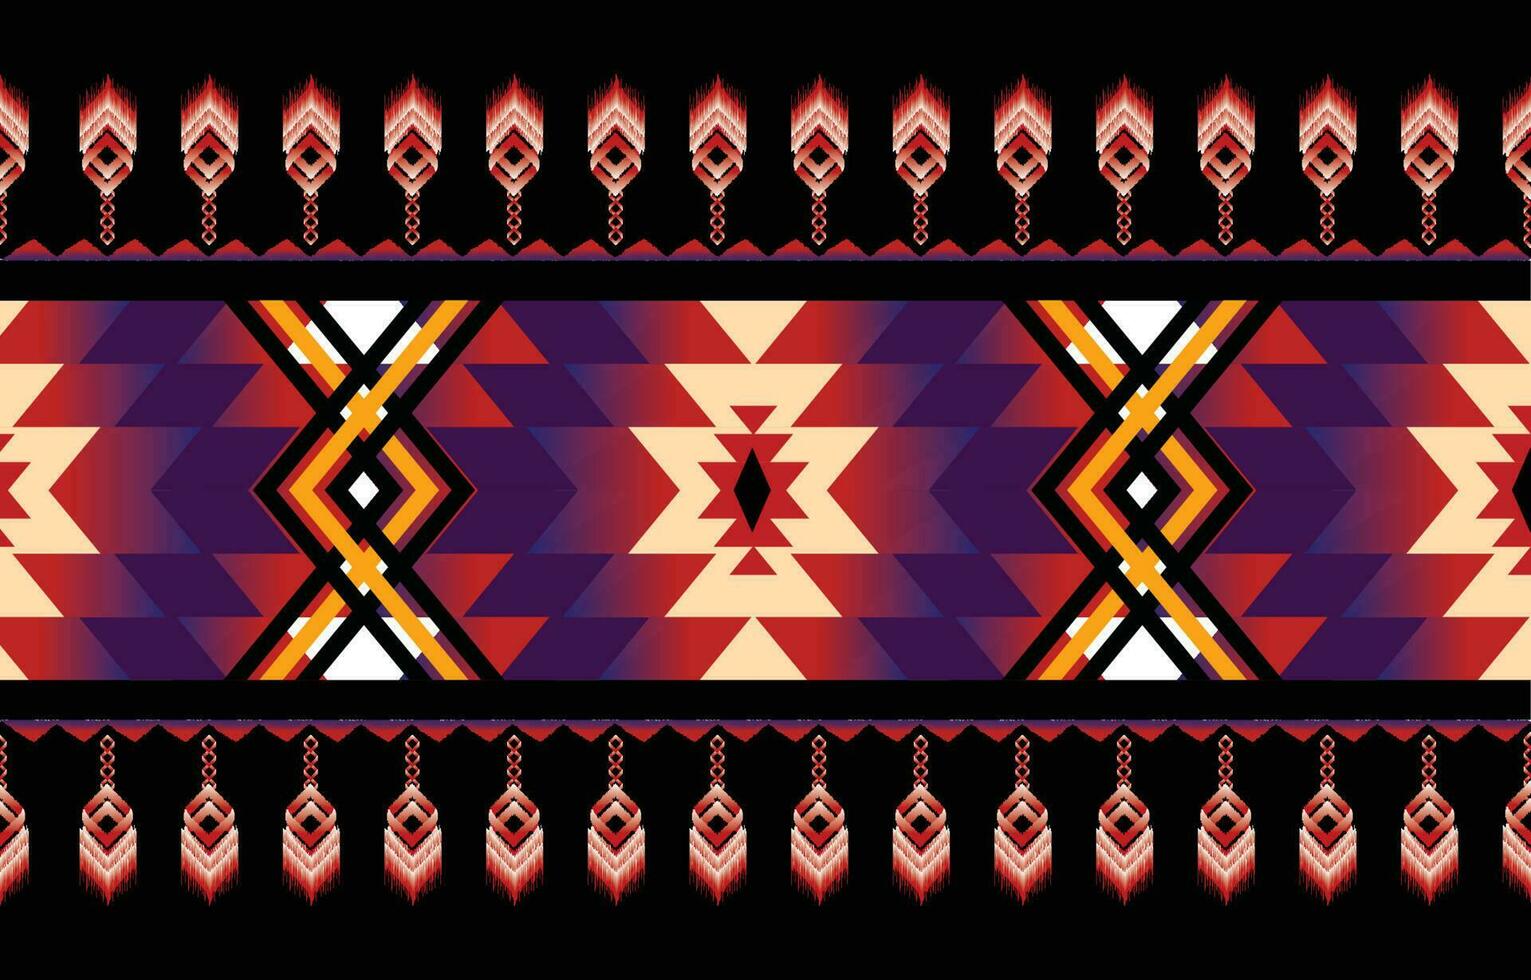 vecteur de motif ethnique géométrique. motif rayé et bohème motif africain, américain, mexicain, aztèque occidental. conçu pour l'arrière-plan, le papier peint, l'impression, la moquette, l'emballage, la tuile, l'illustratoin batik.vector.